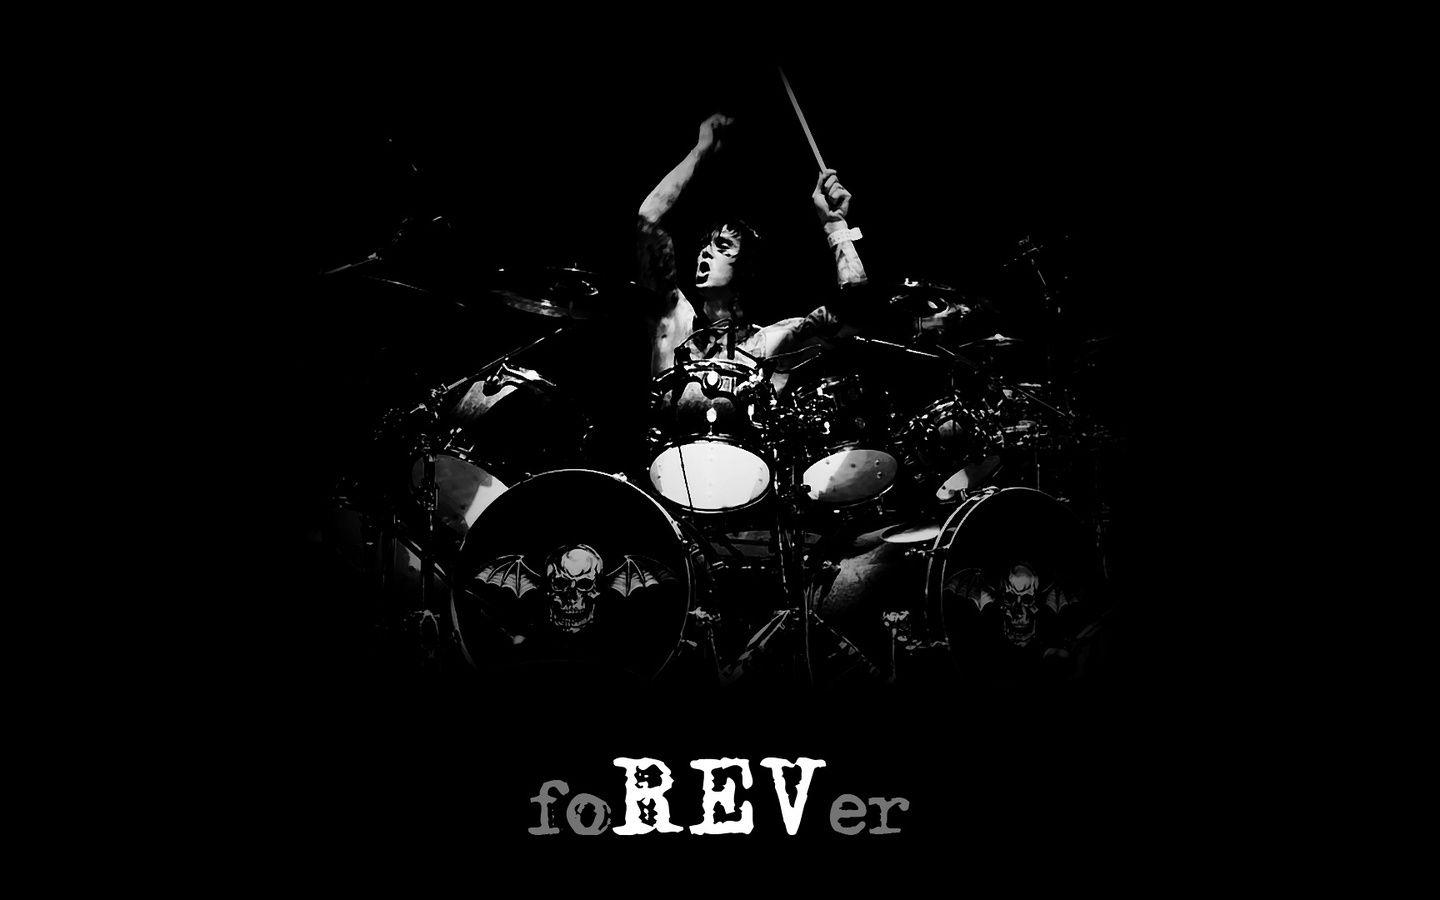 Avenged Sevenfold, Roar, Forever, A7x, Rev, Avenged